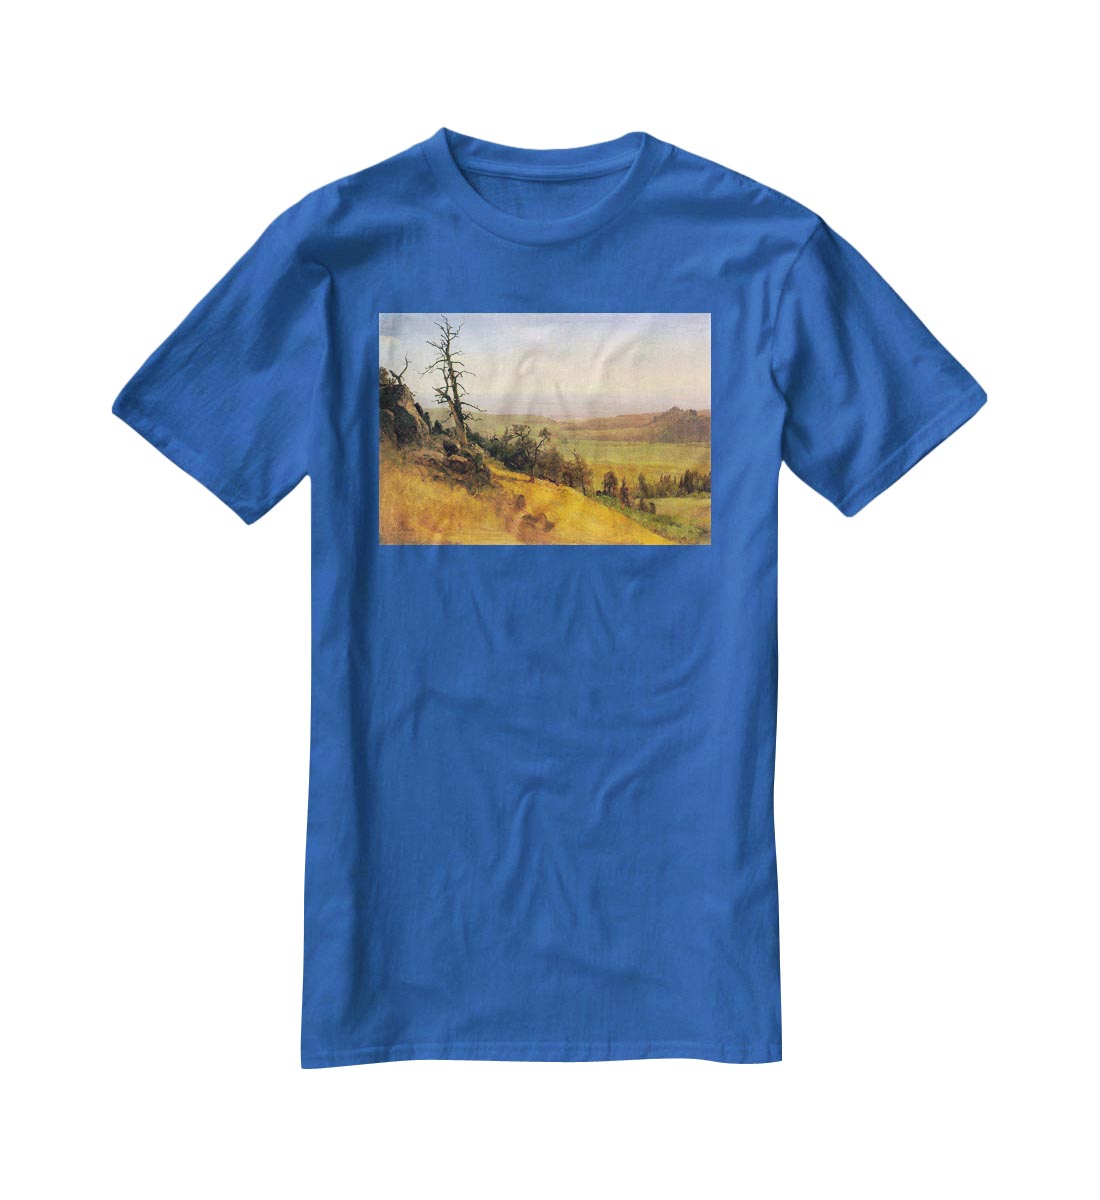 Wasatch Mountains Nebraska by Bierstadt T-Shirt - Canvas Art Rocks - 2